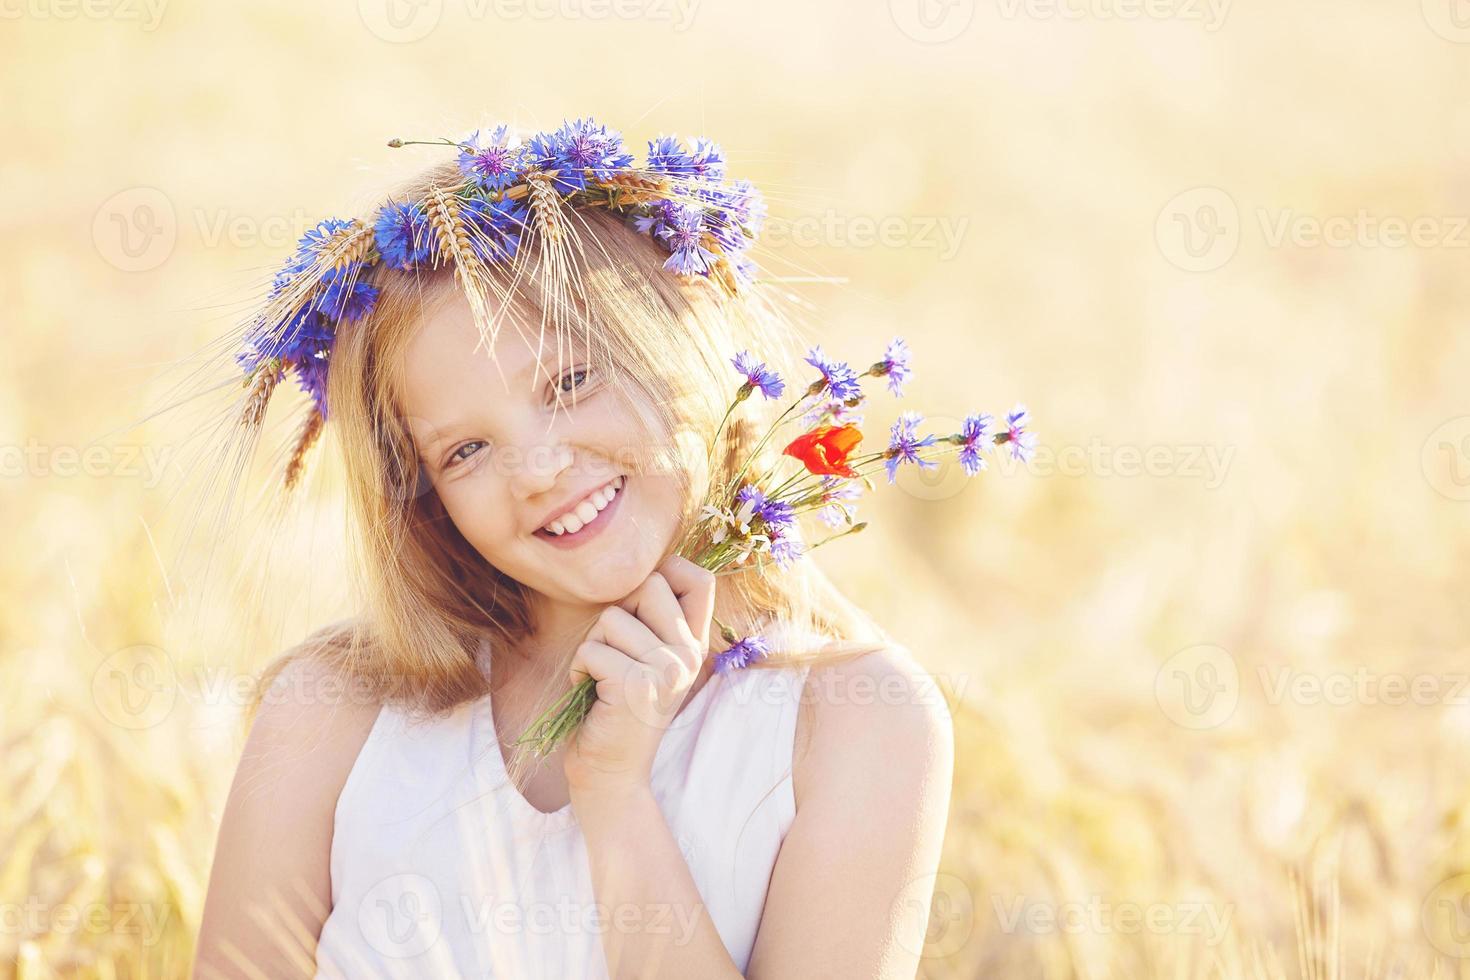 ragazza felice con corona di fiori al campo di grano estivo foto